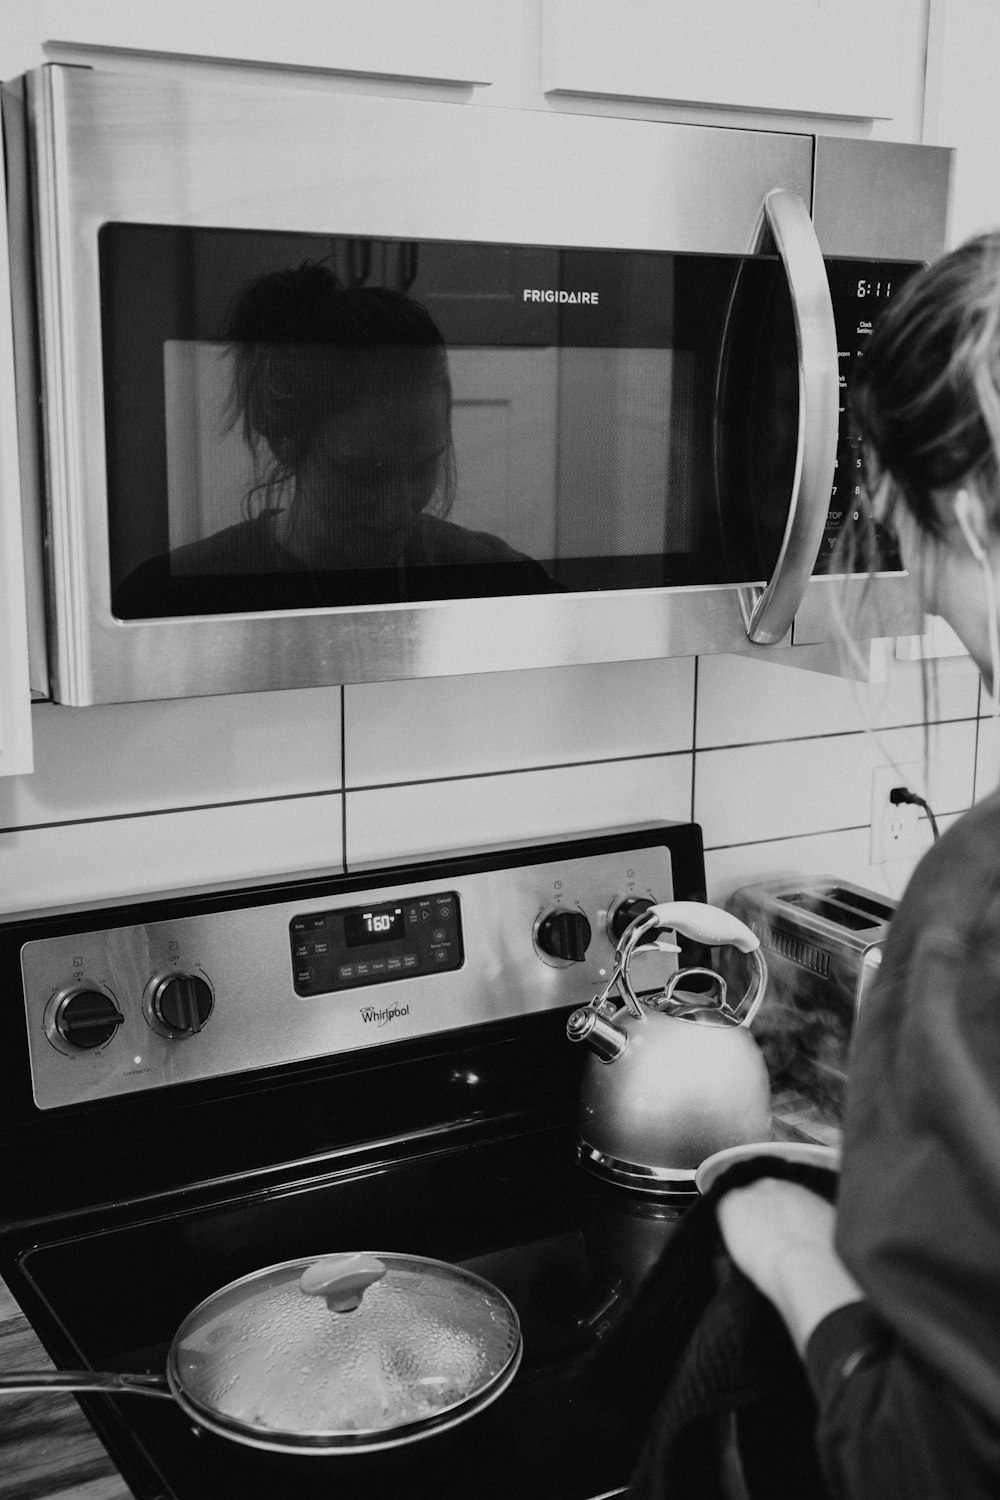 foto in scala di grigi del forno a microonde